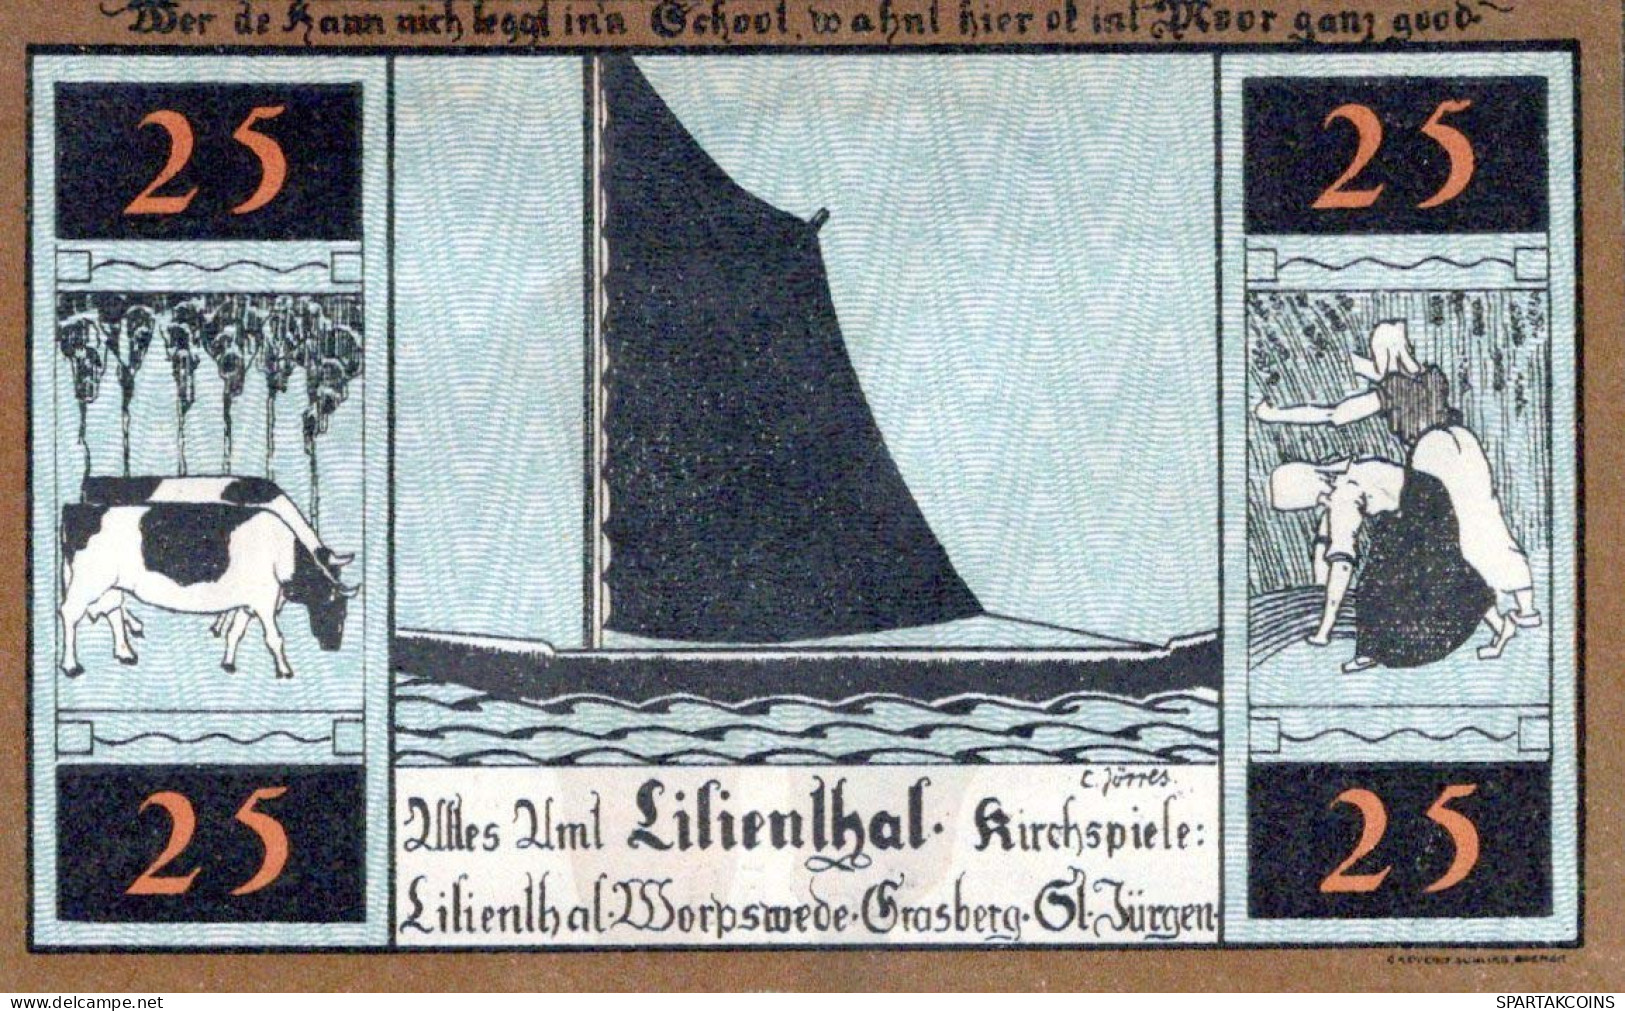 25 PFENNIG 1921 Stadt LILIENTHAL Hanover UNC DEUTSCHLAND Notgeld Banknote #PC232 - [11] Emisiones Locales